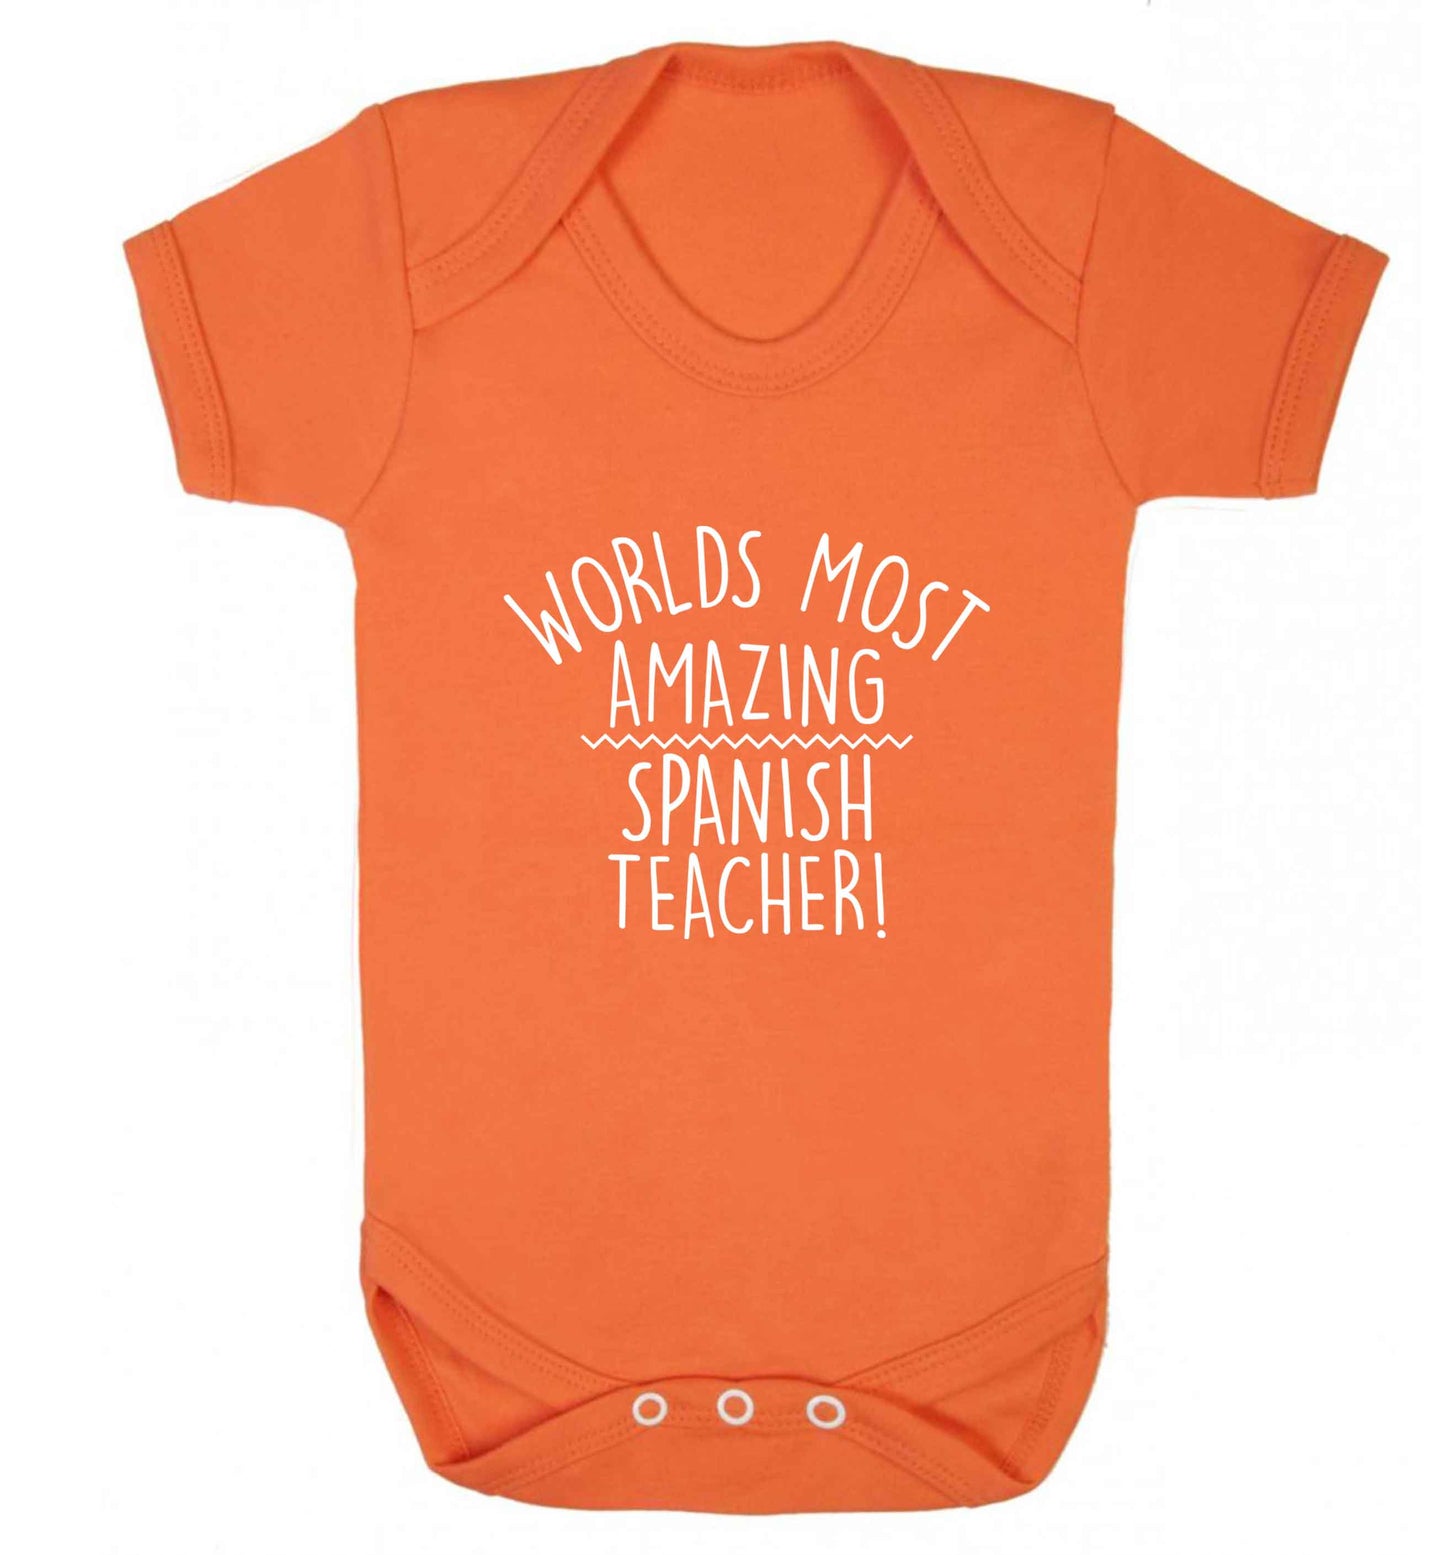 Worlds most amazing Spanish teacher baby vest orange 18-24 months